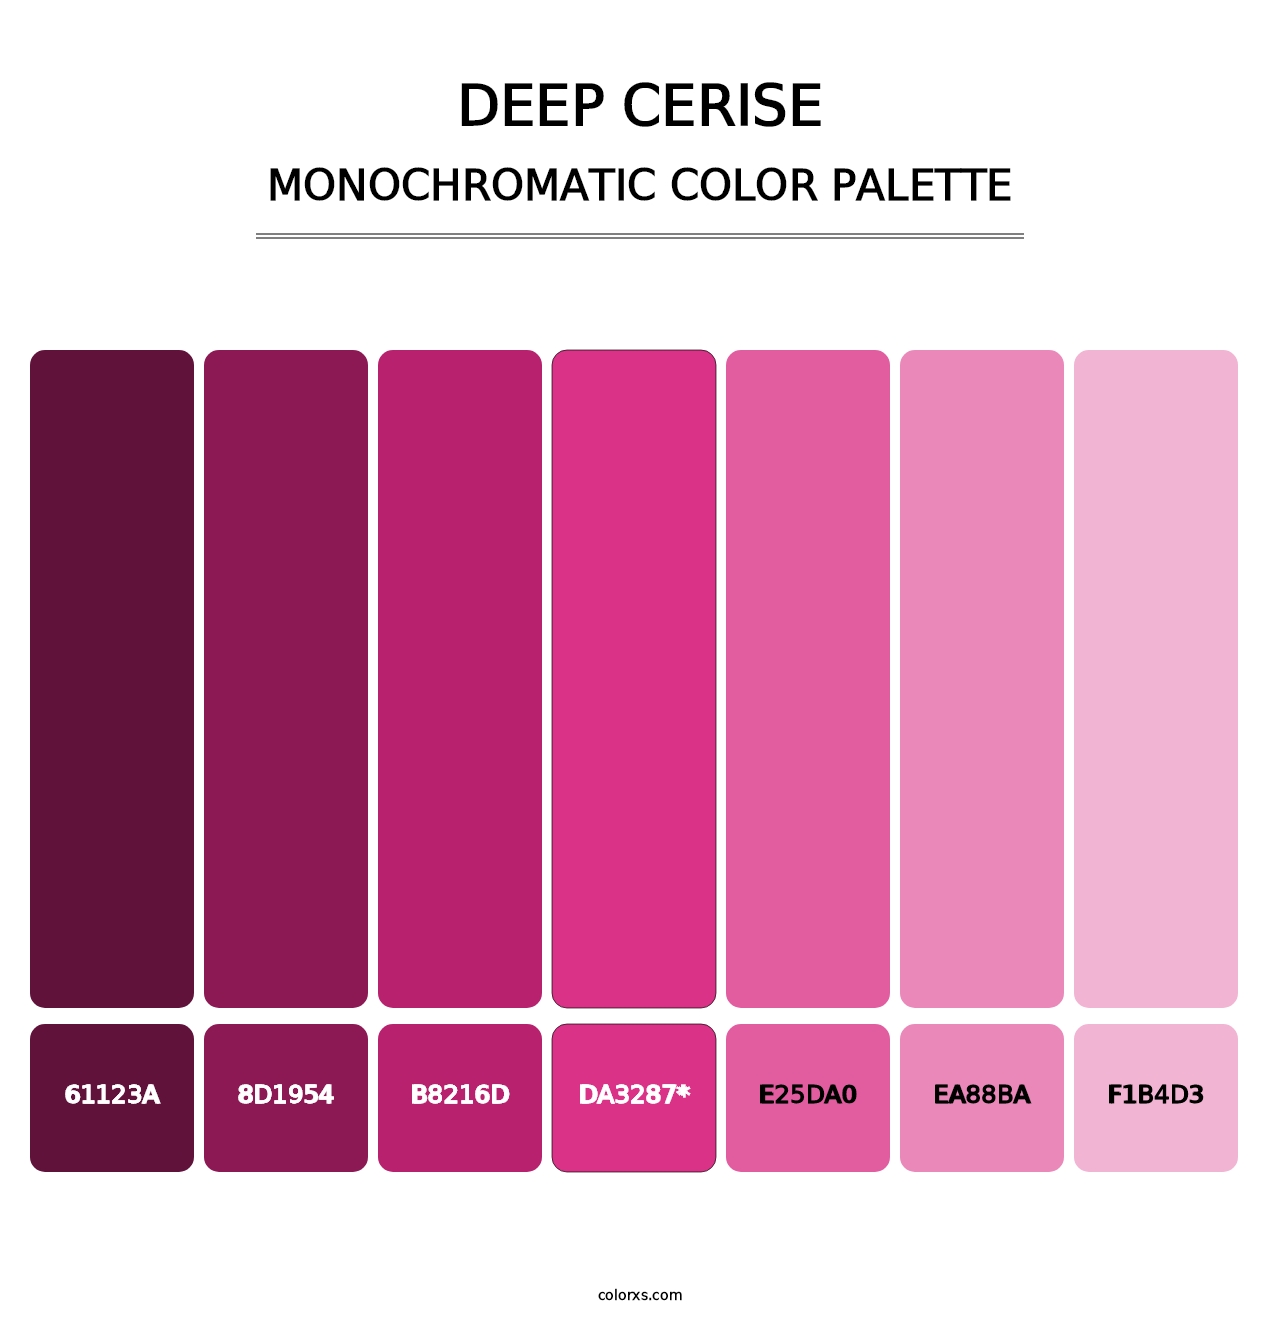 Deep Cerise - Monochromatic Color Palette